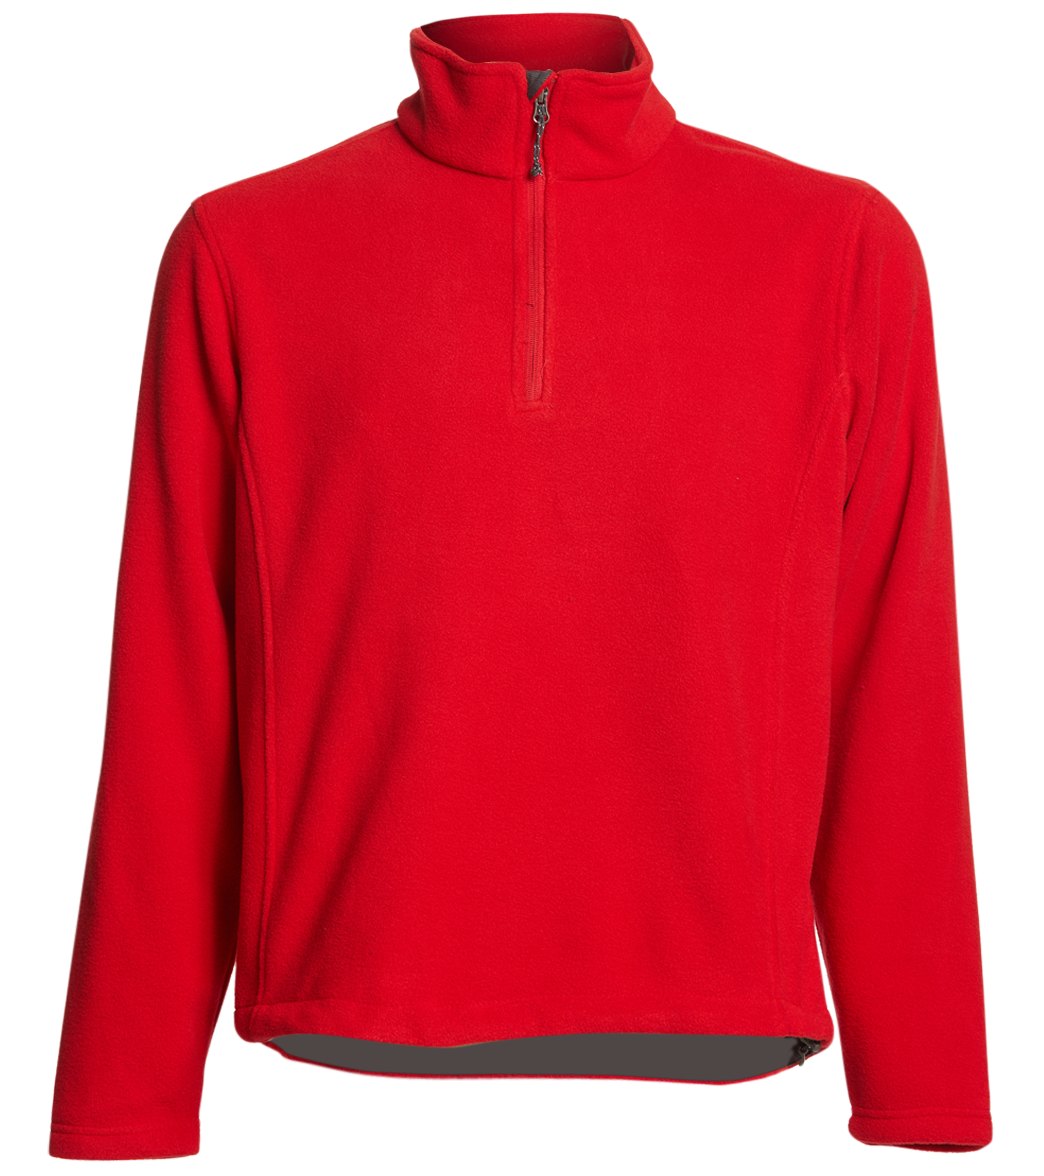 Adult Men's Fleece 1/4-Zip Pullover - True Red Large Polyester - Swimoutlet.com